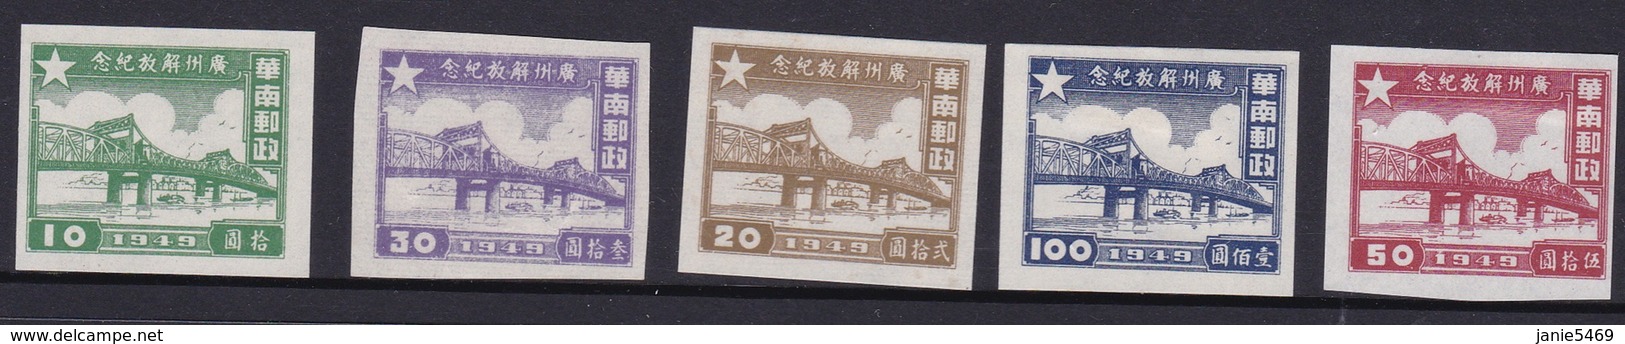 China South China SG SC1-5 1949 Pearl River Bridge, Mint Never Hinged - Southern-China 1949-50